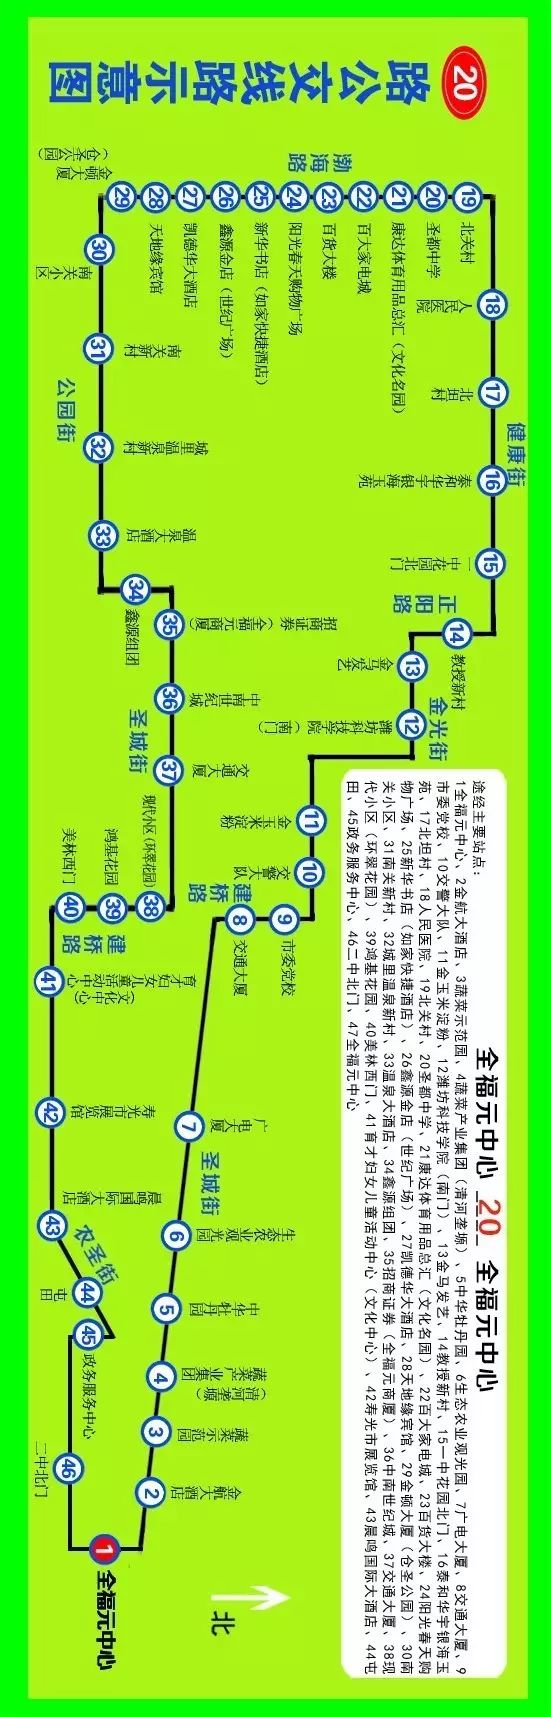 寿光16路公交车路线图图片